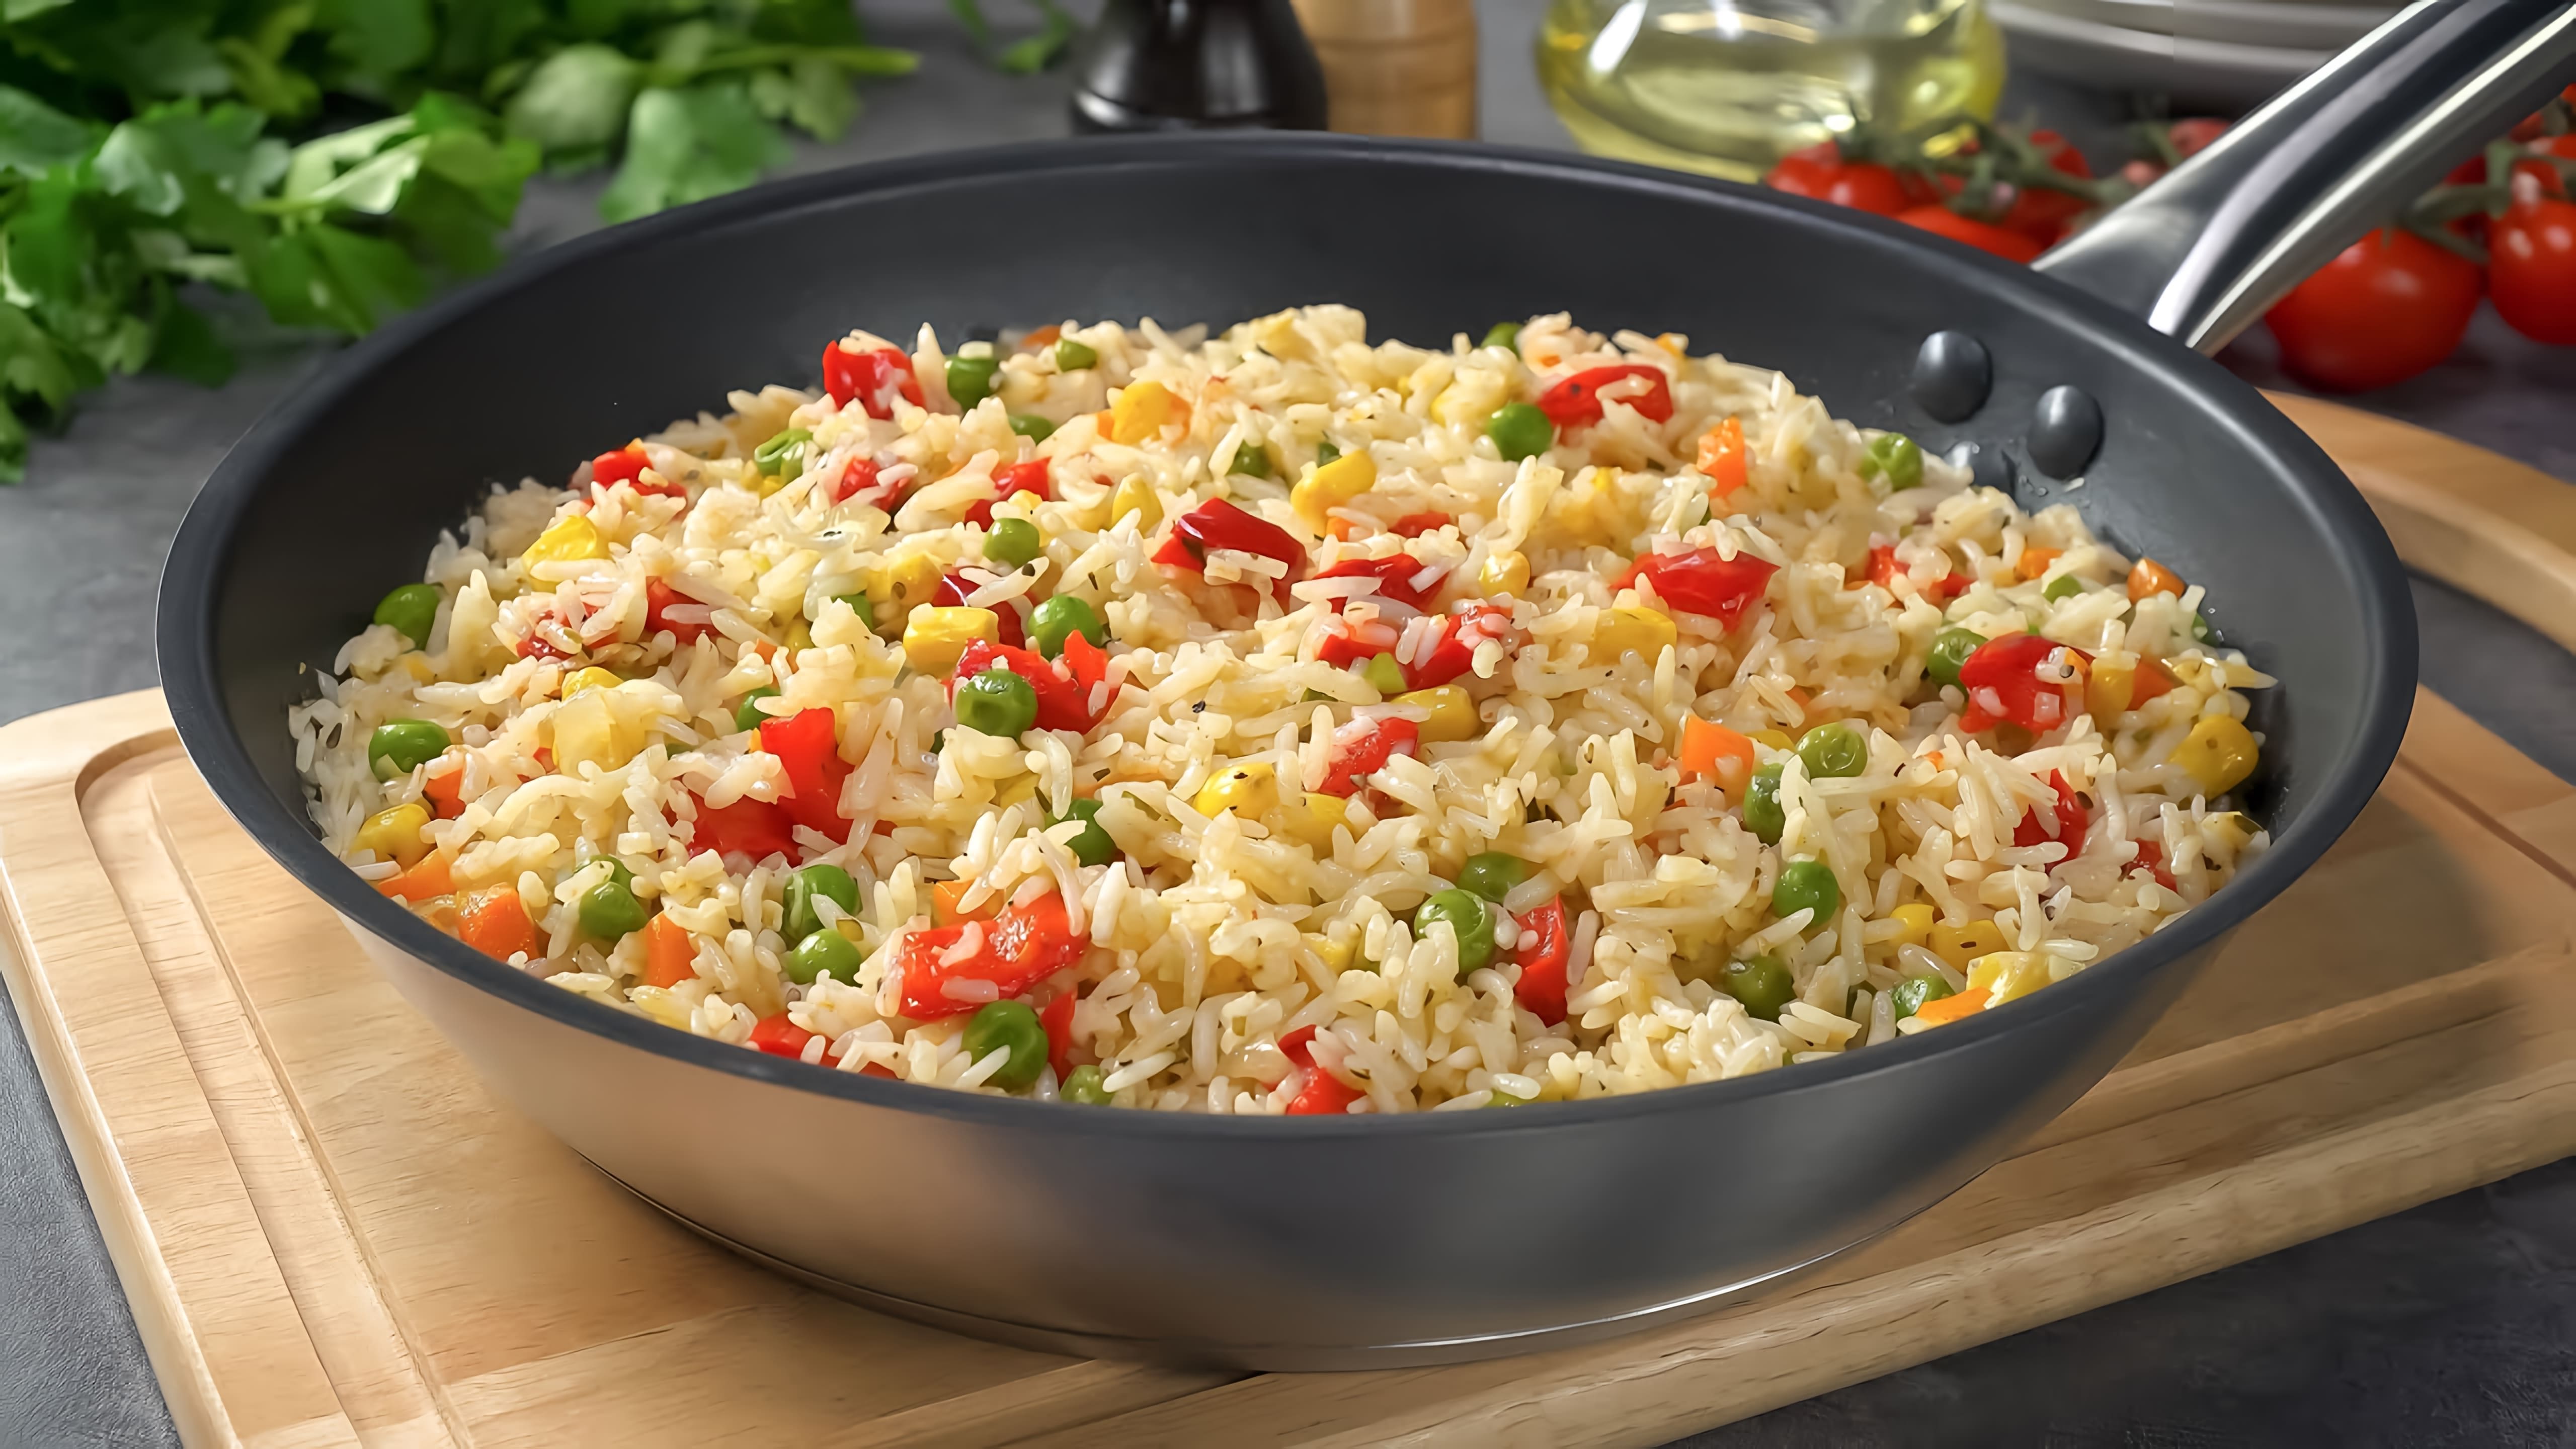 В этом видео демонстрируется рецепт приготовления риса с овощами в одной сковороде